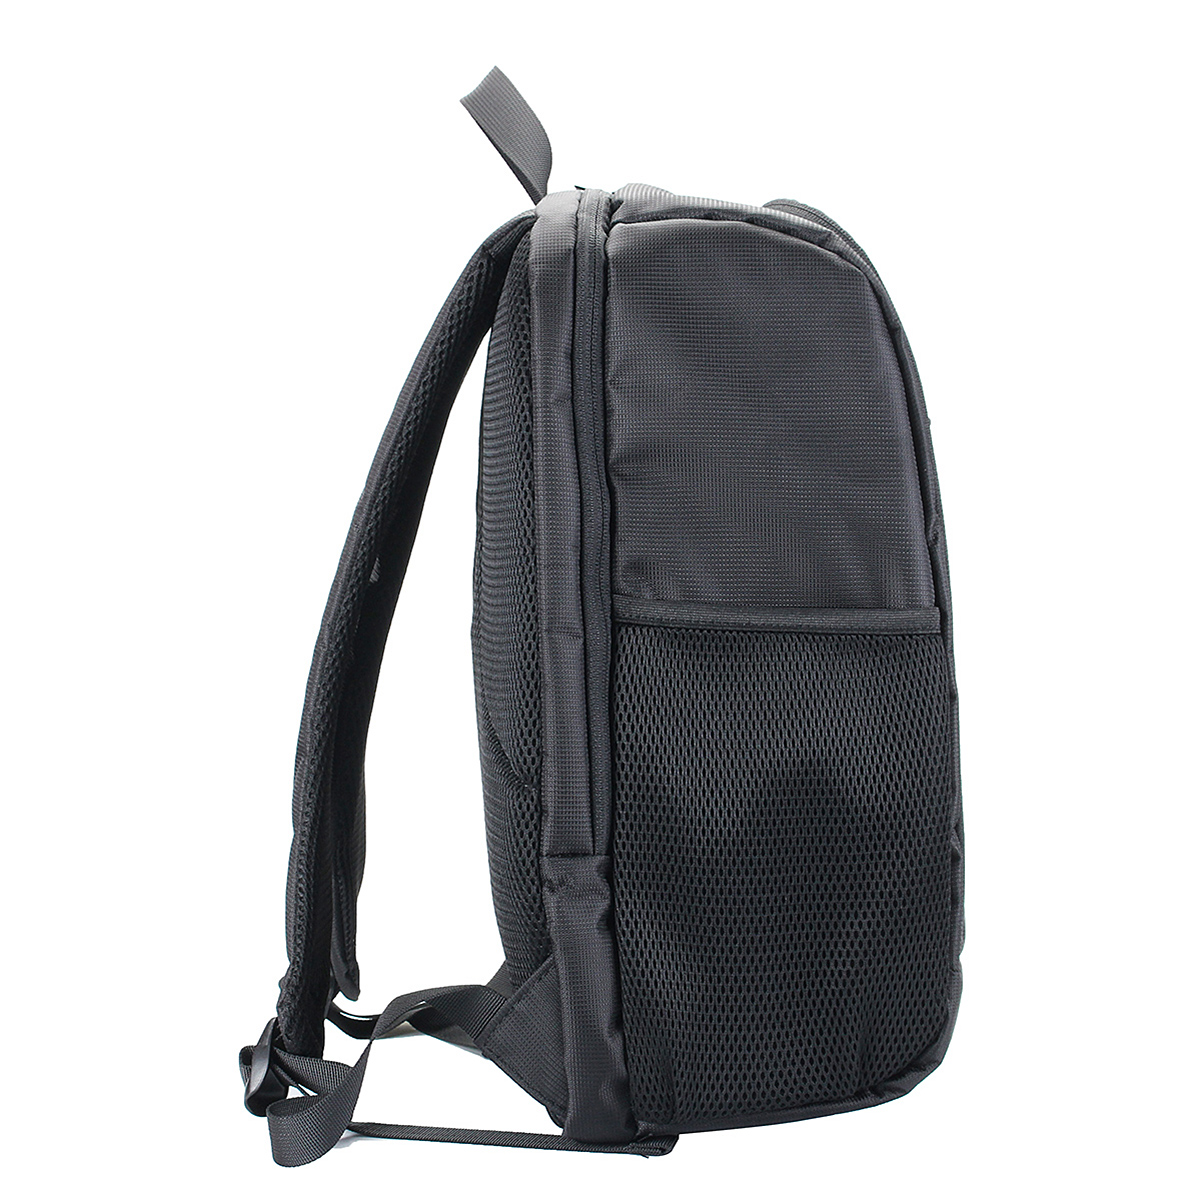 Waterproof-Backpack-Shoulder-Bag-Laptop-Case-For-DSLR-Camera-Lens-Accessories-1401643-4